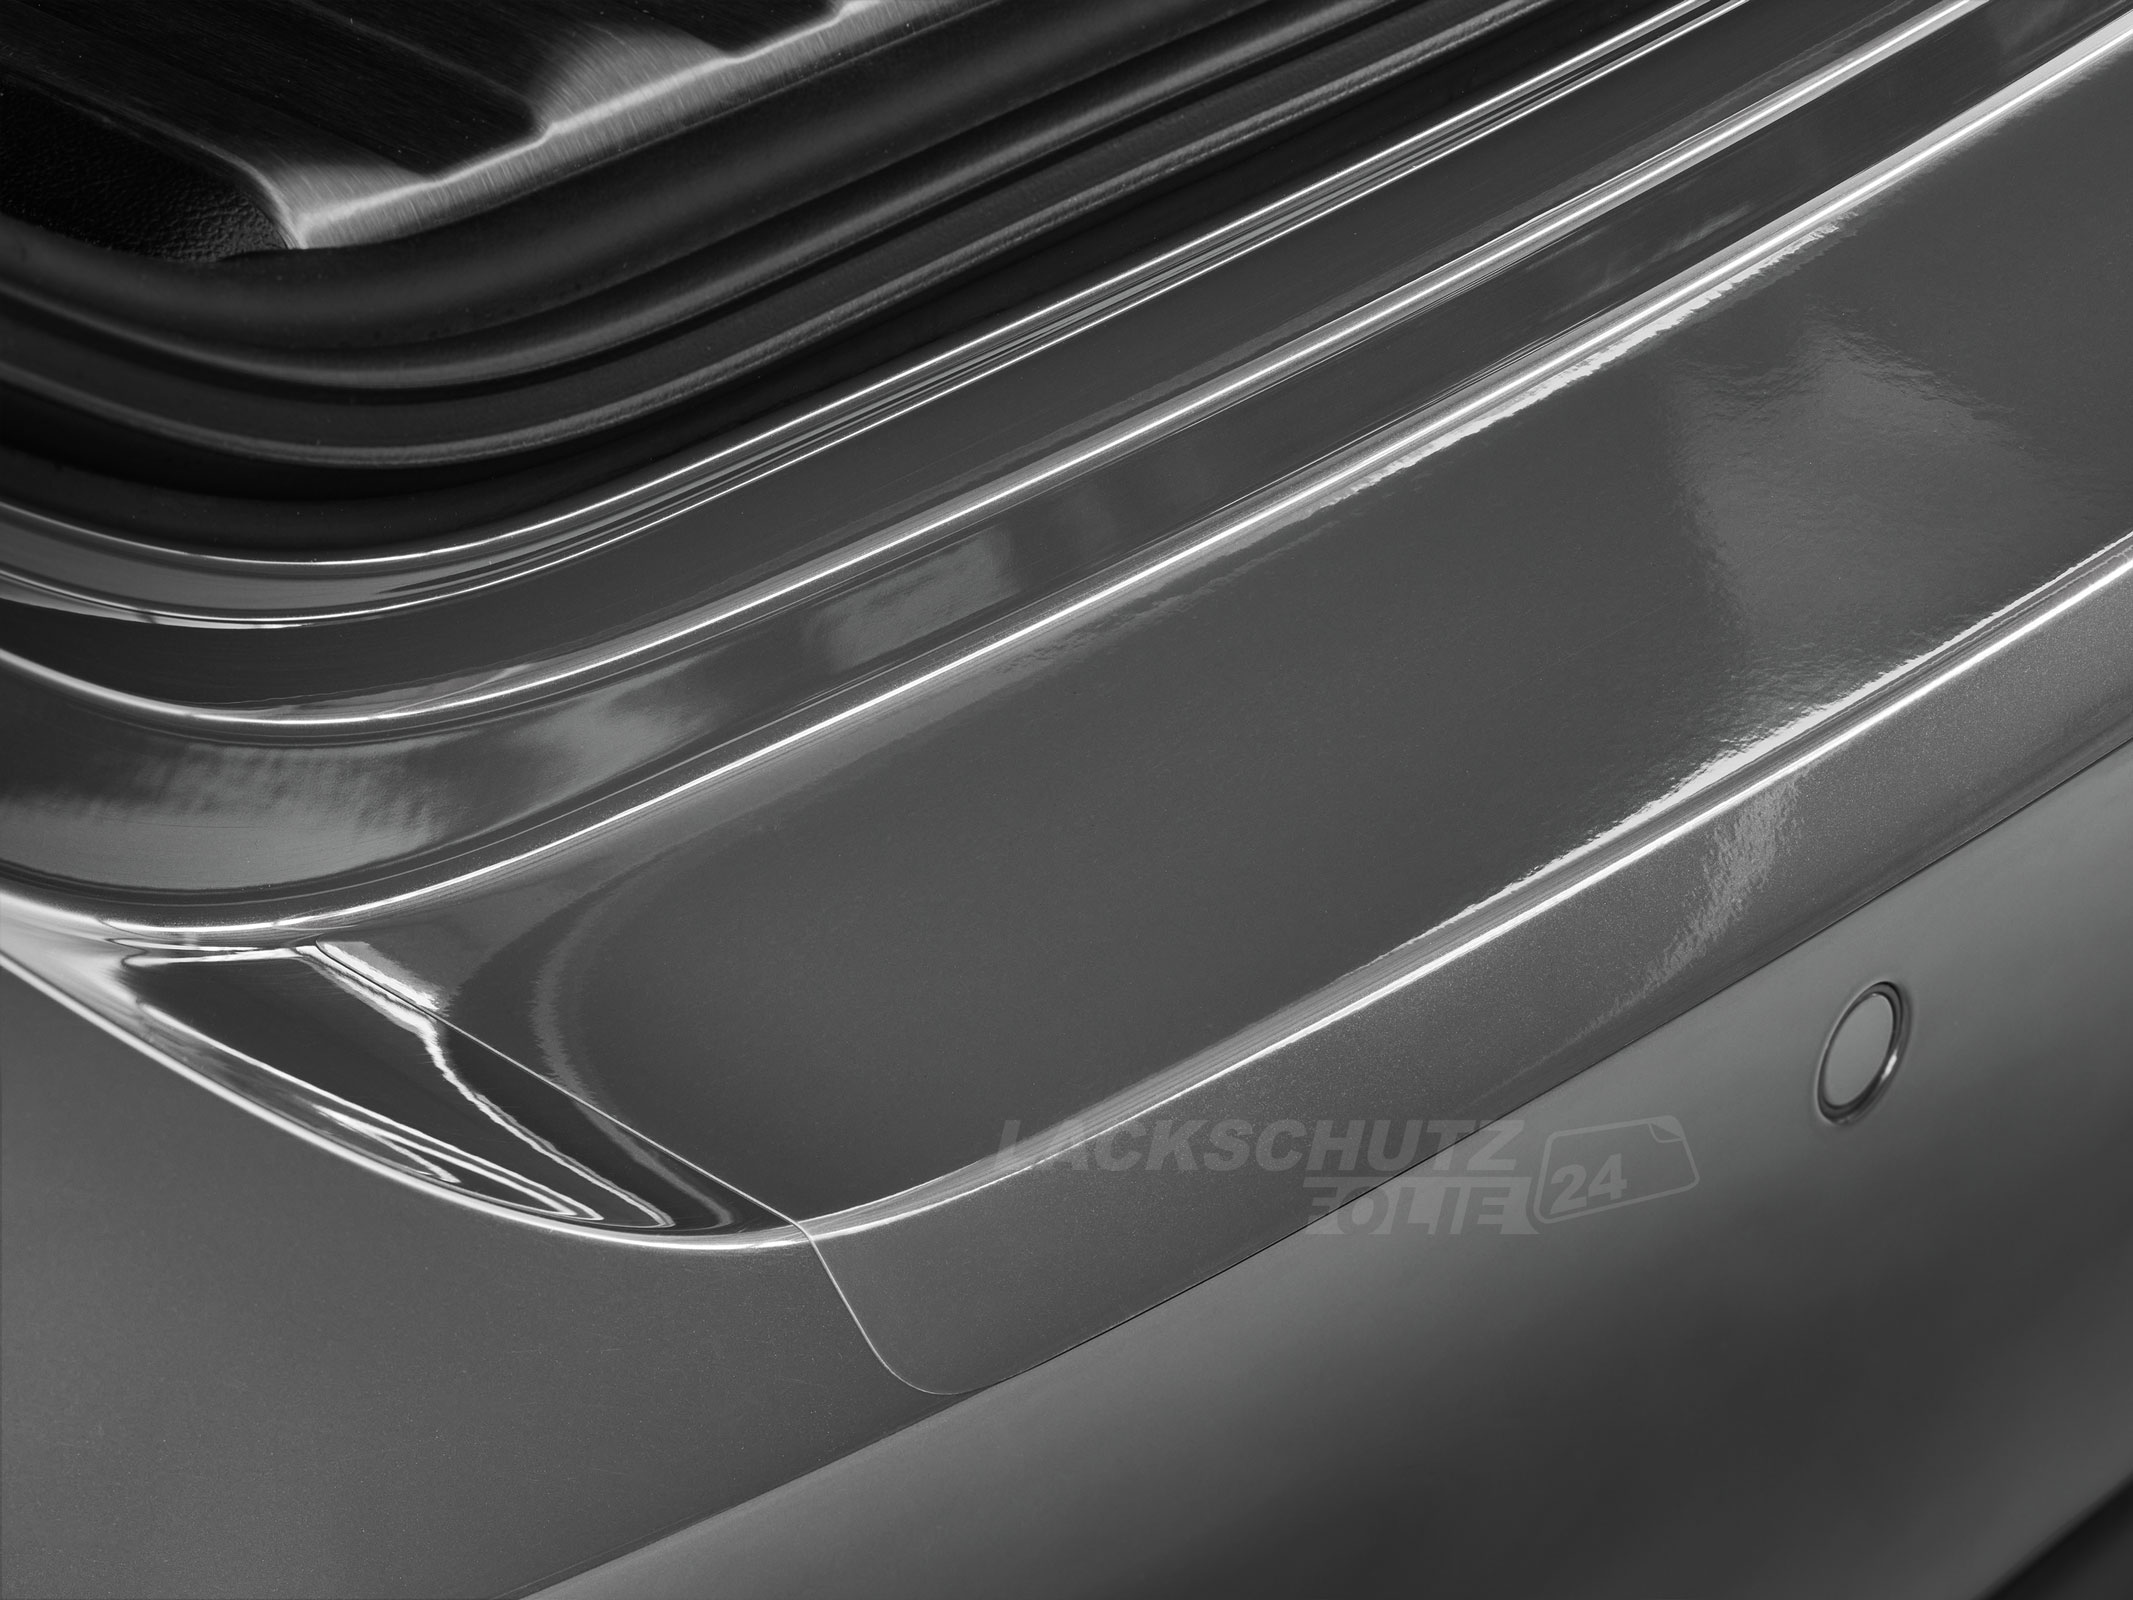 Ladekantenschutzfolie - Transparent Glatt Hochglänzend 150 µm stark für Ford Fiesta BJ 2001-2005